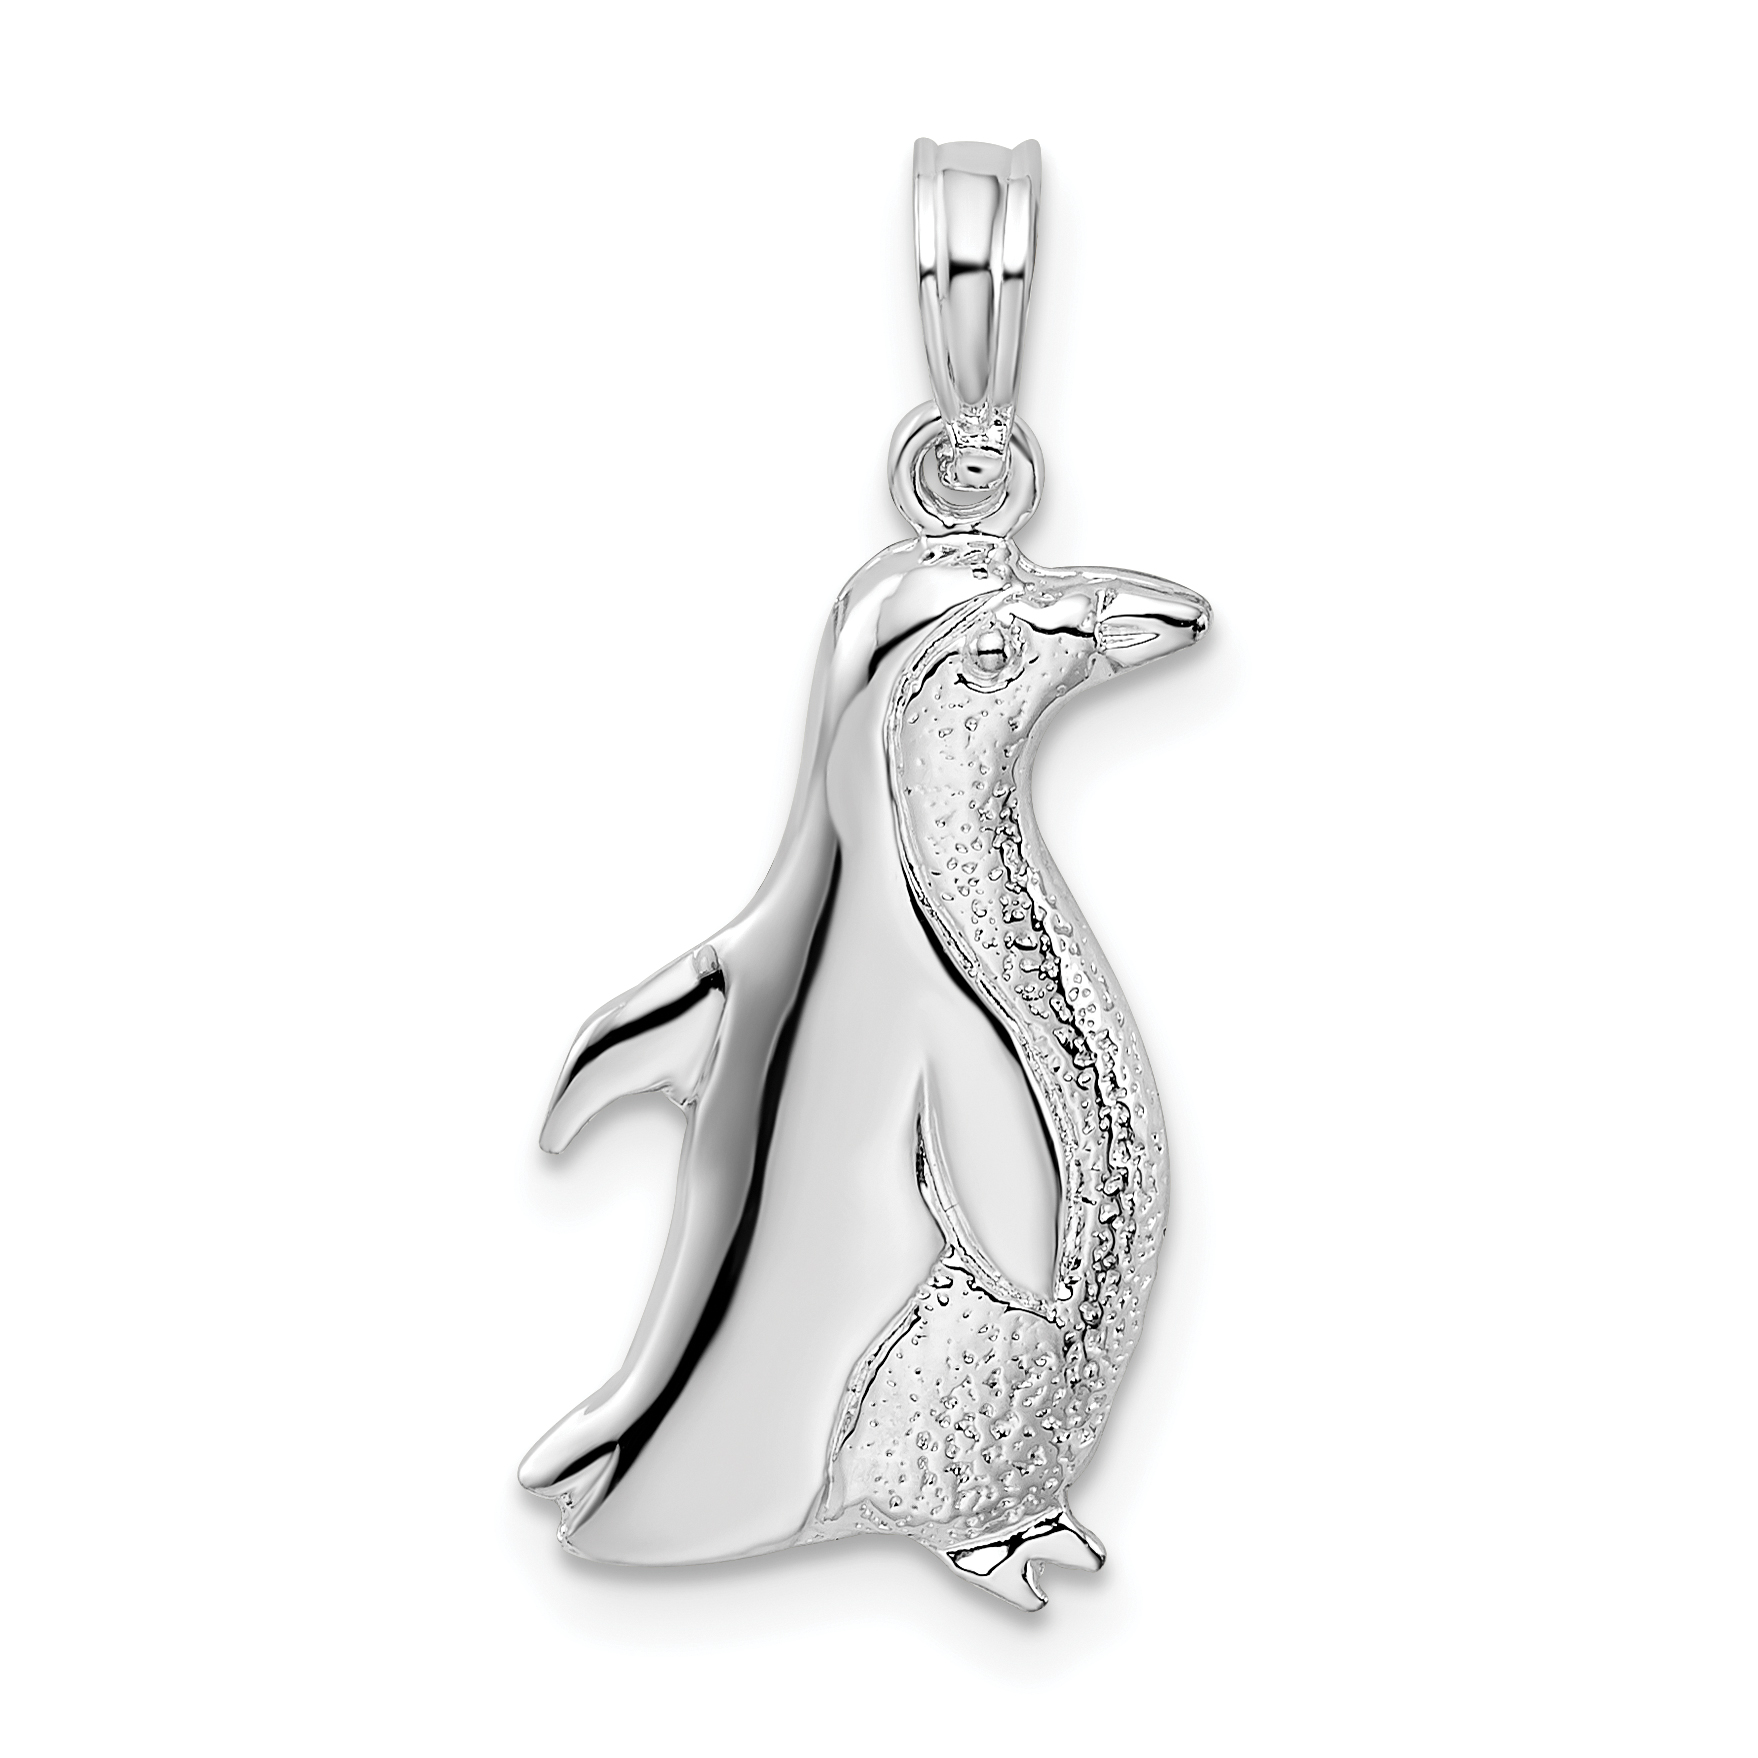 Penguin necklace origami penguin pendant gold penguin jewelry geometric  necklace